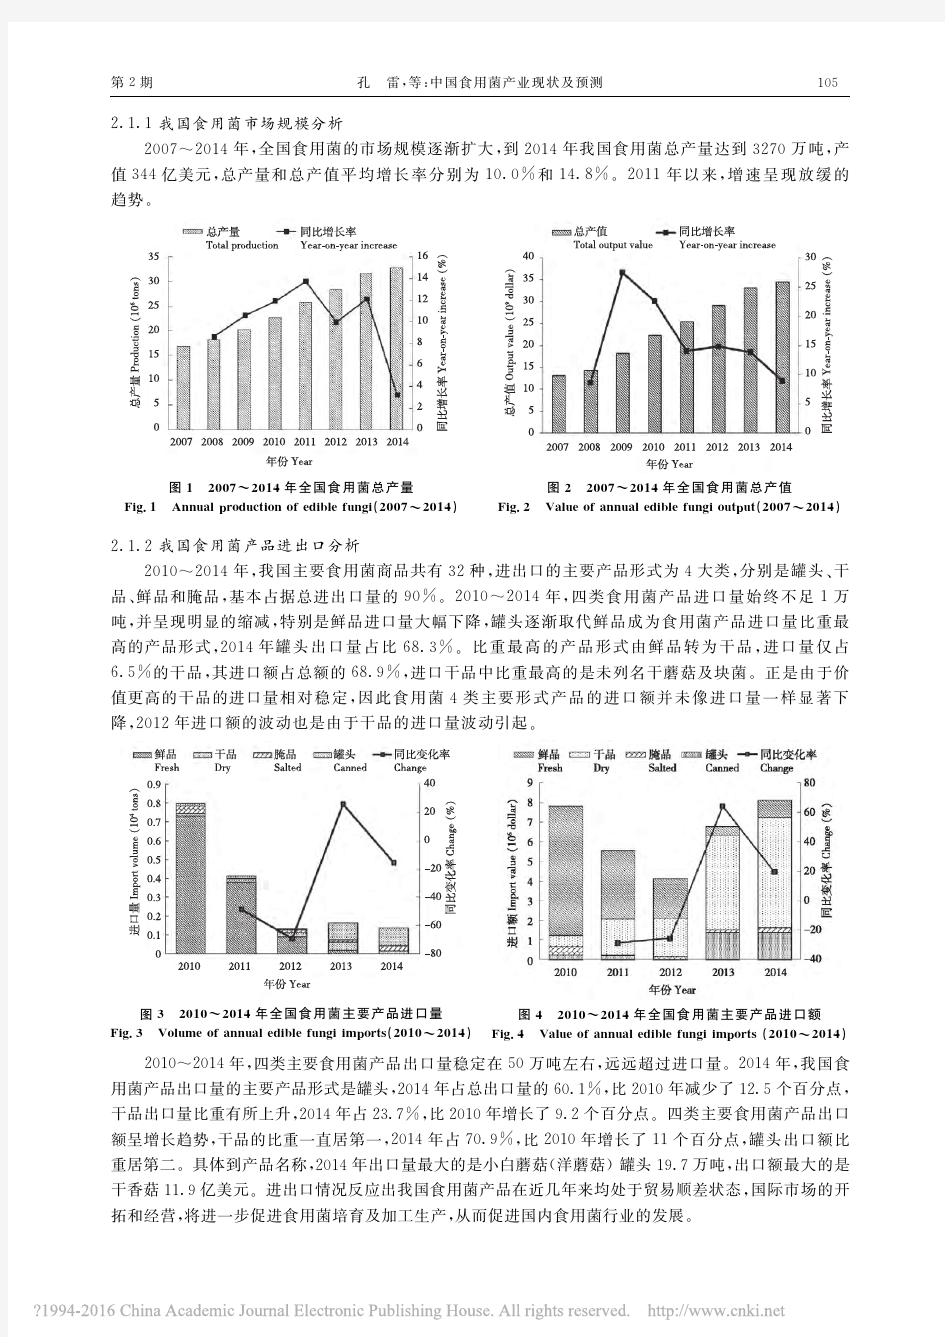 中国食用菌产业现状及预测